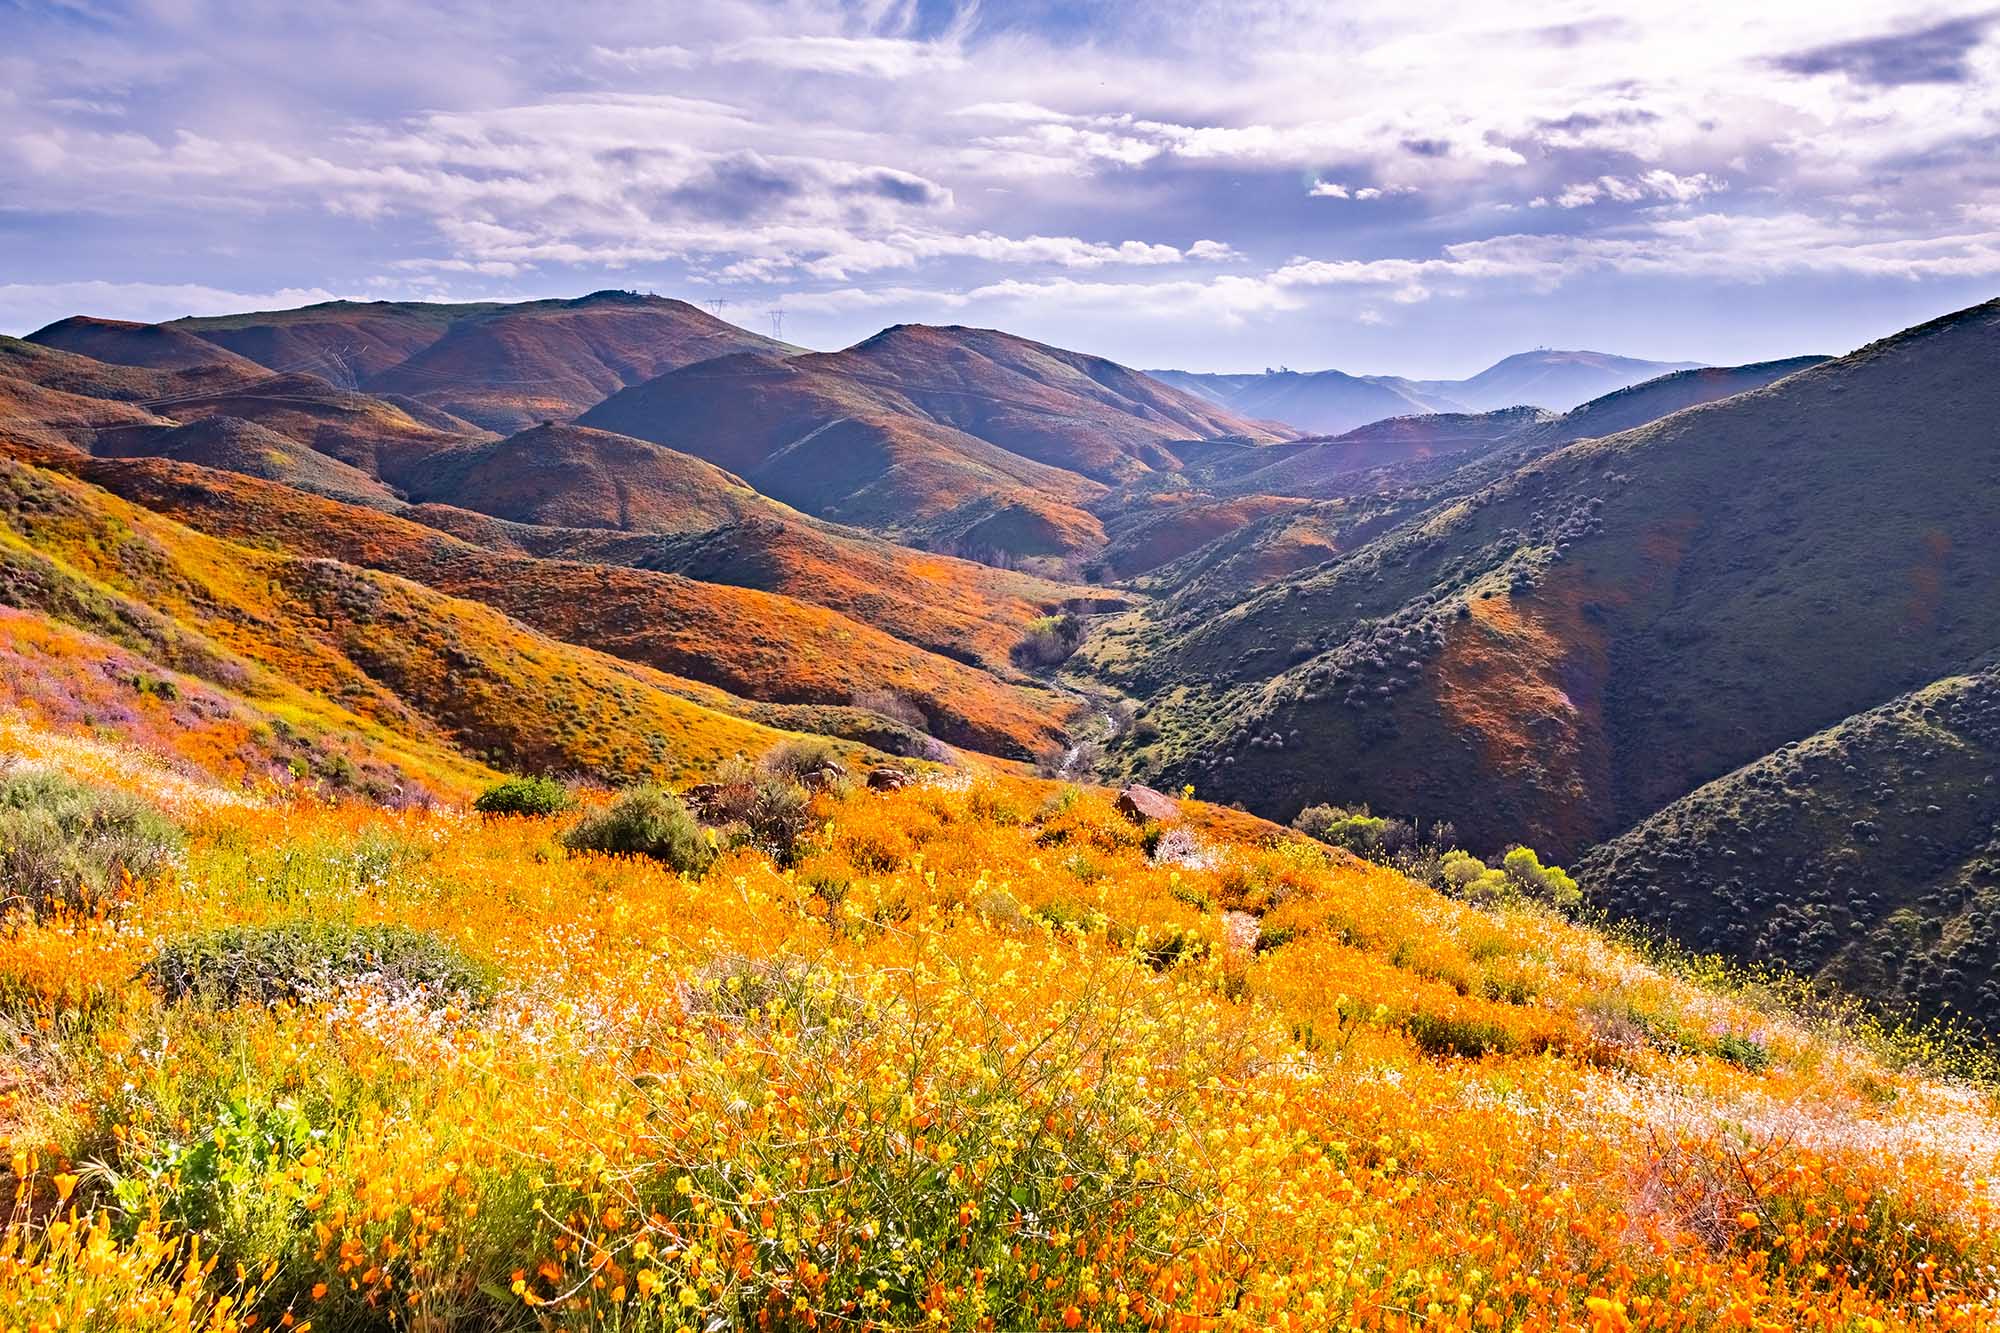 o que é um superbloom? Foto de um superbloom de flores silvestres da Califórnia.